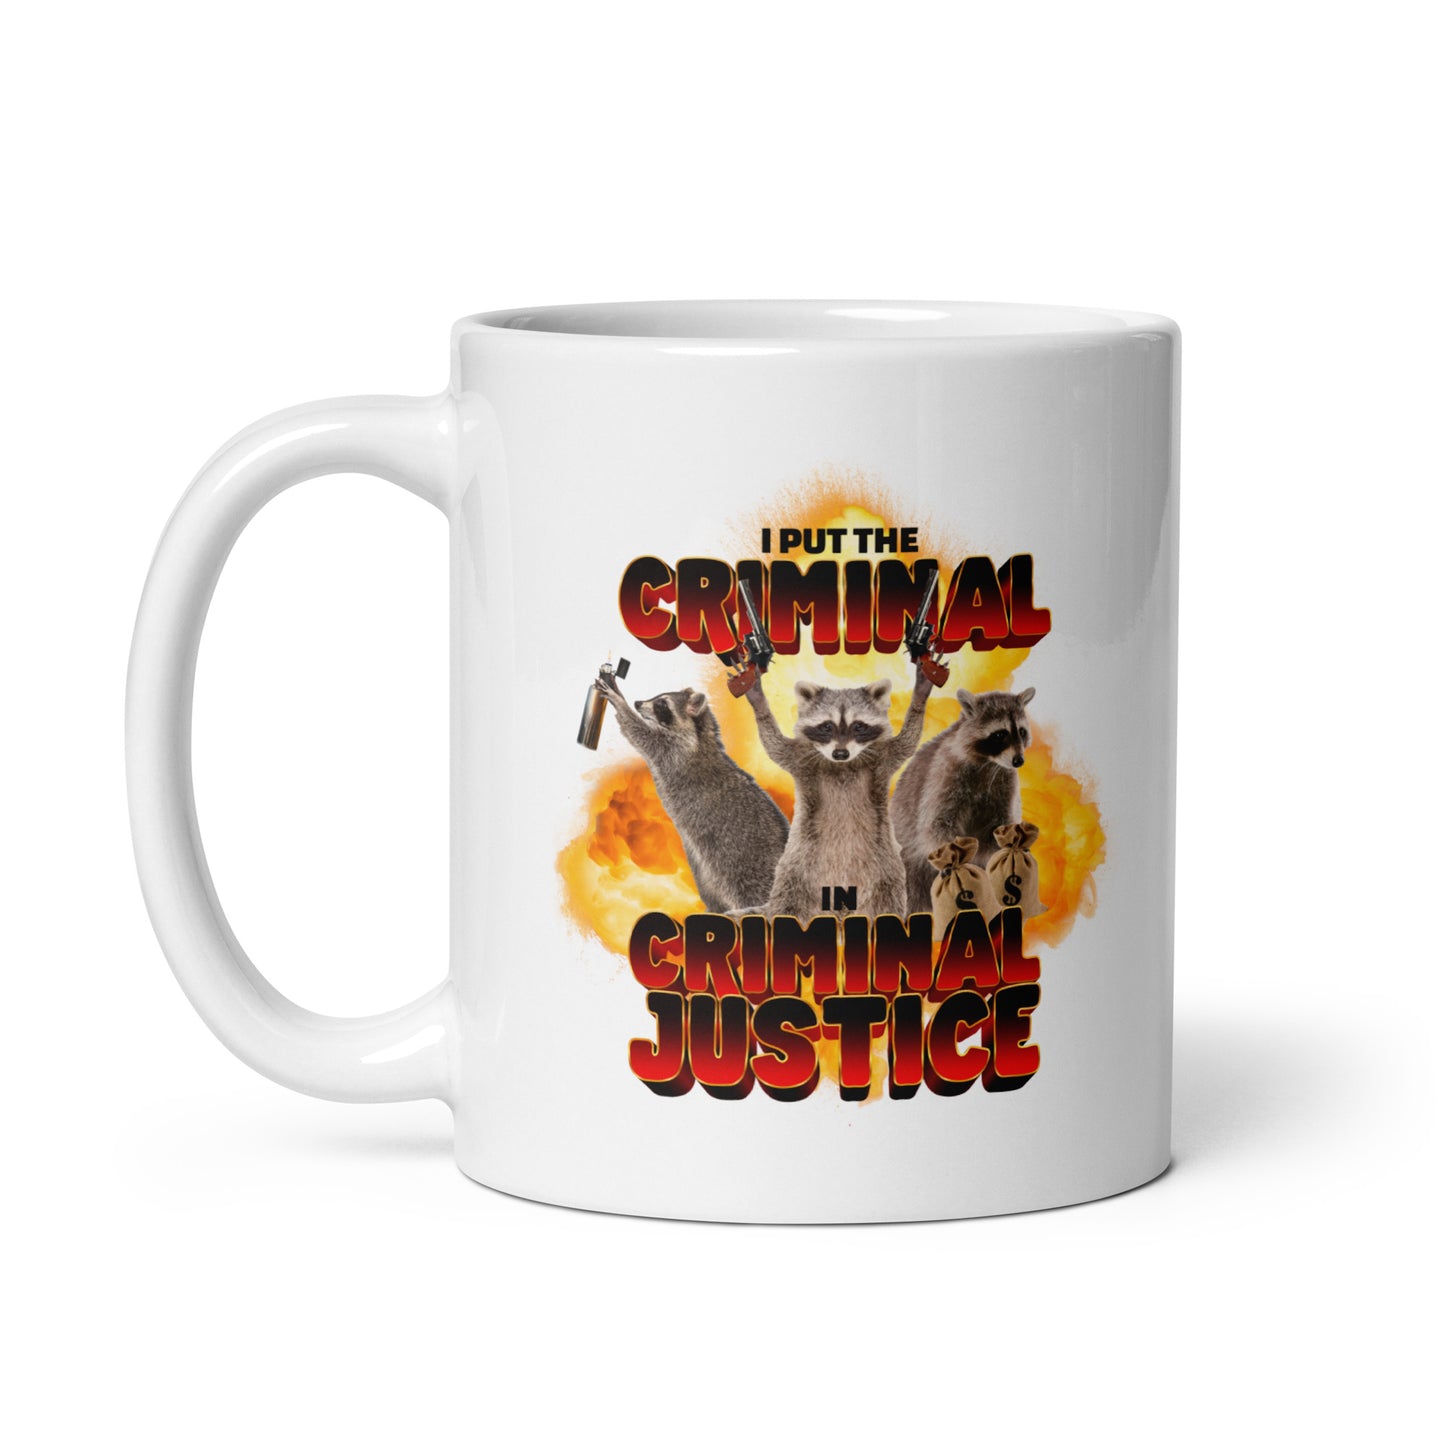 I Put the Criminal in Criminal Justice mug